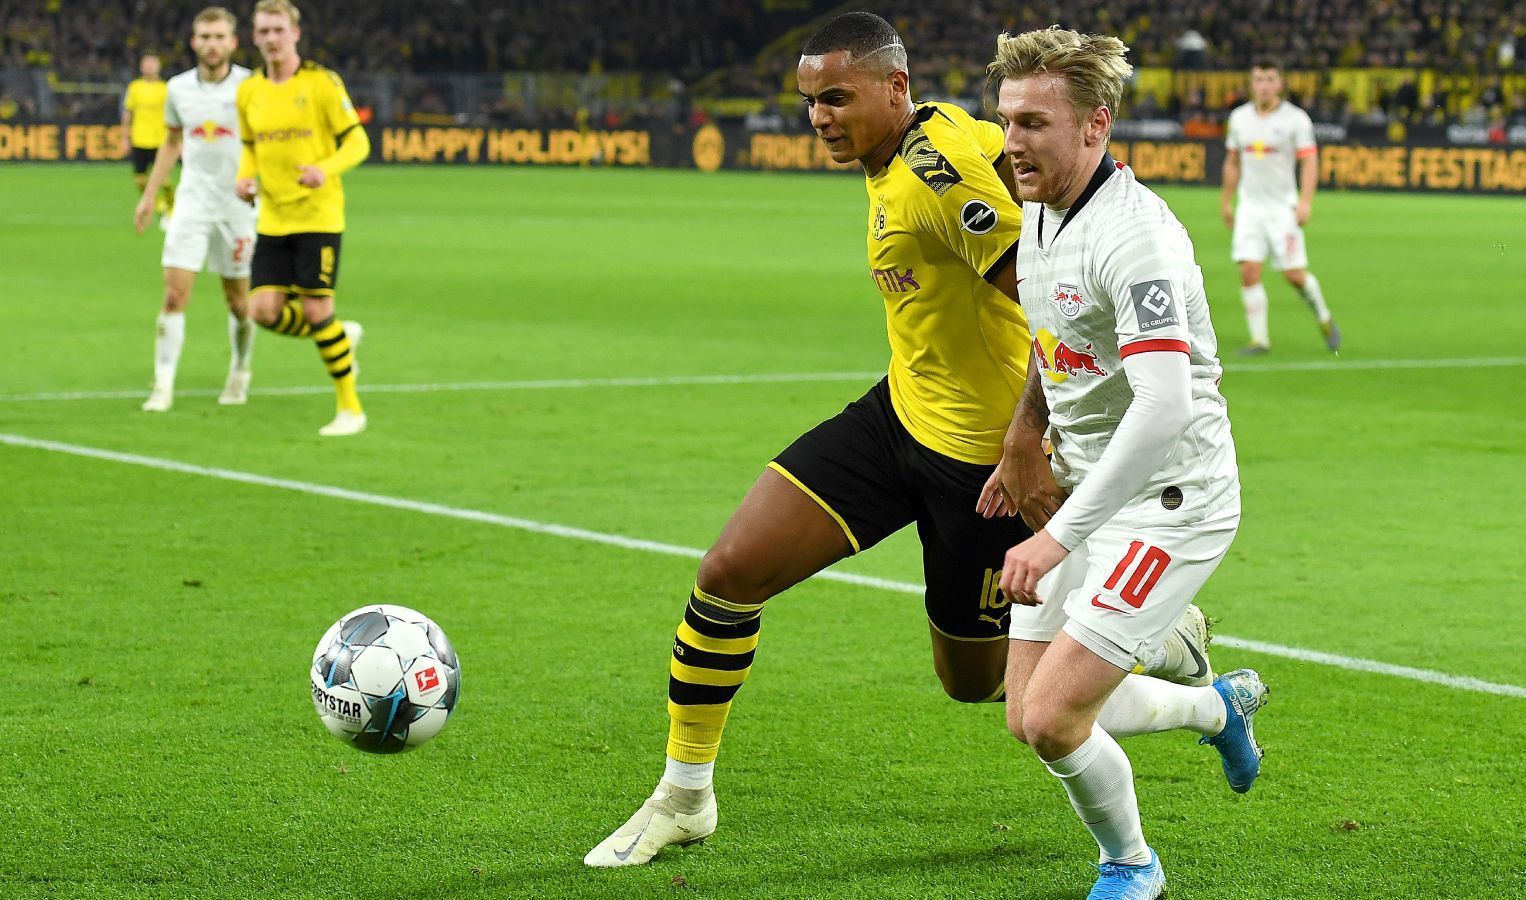 
                <strong>Manuel Akanji (Borussia Dortmund)</strong><br>
                Mit einem Querpass im eigenen Strafraum lässt der Schweizer kurz den Puls von Teamkollegen und Fans hochschnellen. Findet schwergängig in die Partie, macht seine Sache aber ordentlich. ran-Note: 3
              